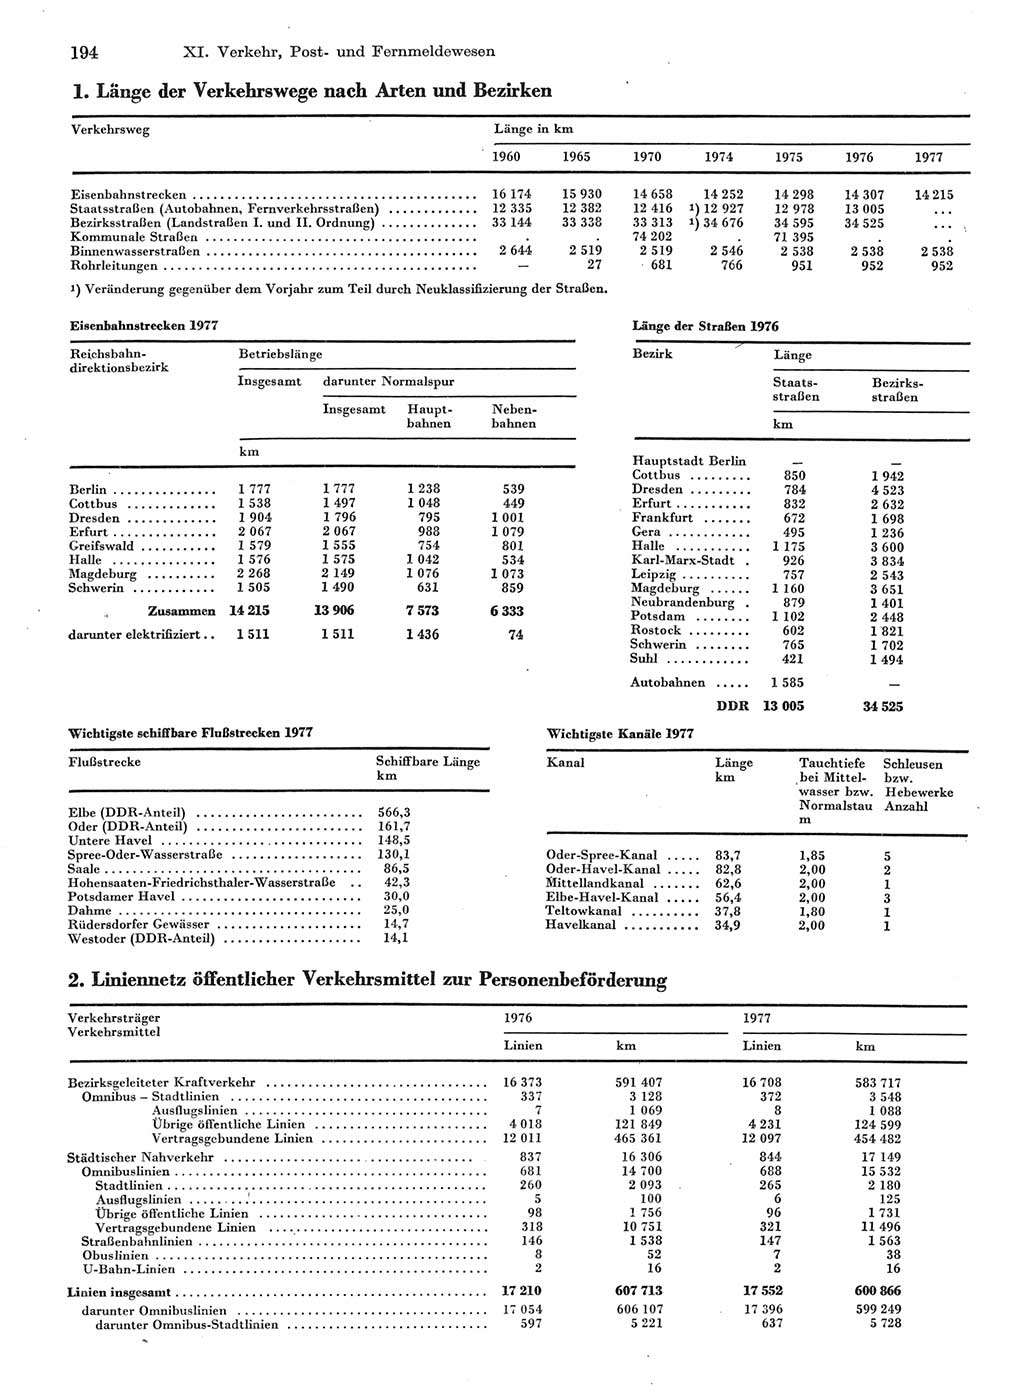 Statistisches Jahrbuch der Deutschen Demokratischen Republik (DDR) 1978, Seite 194 (Stat. Jb. DDR 1978, S. 194)